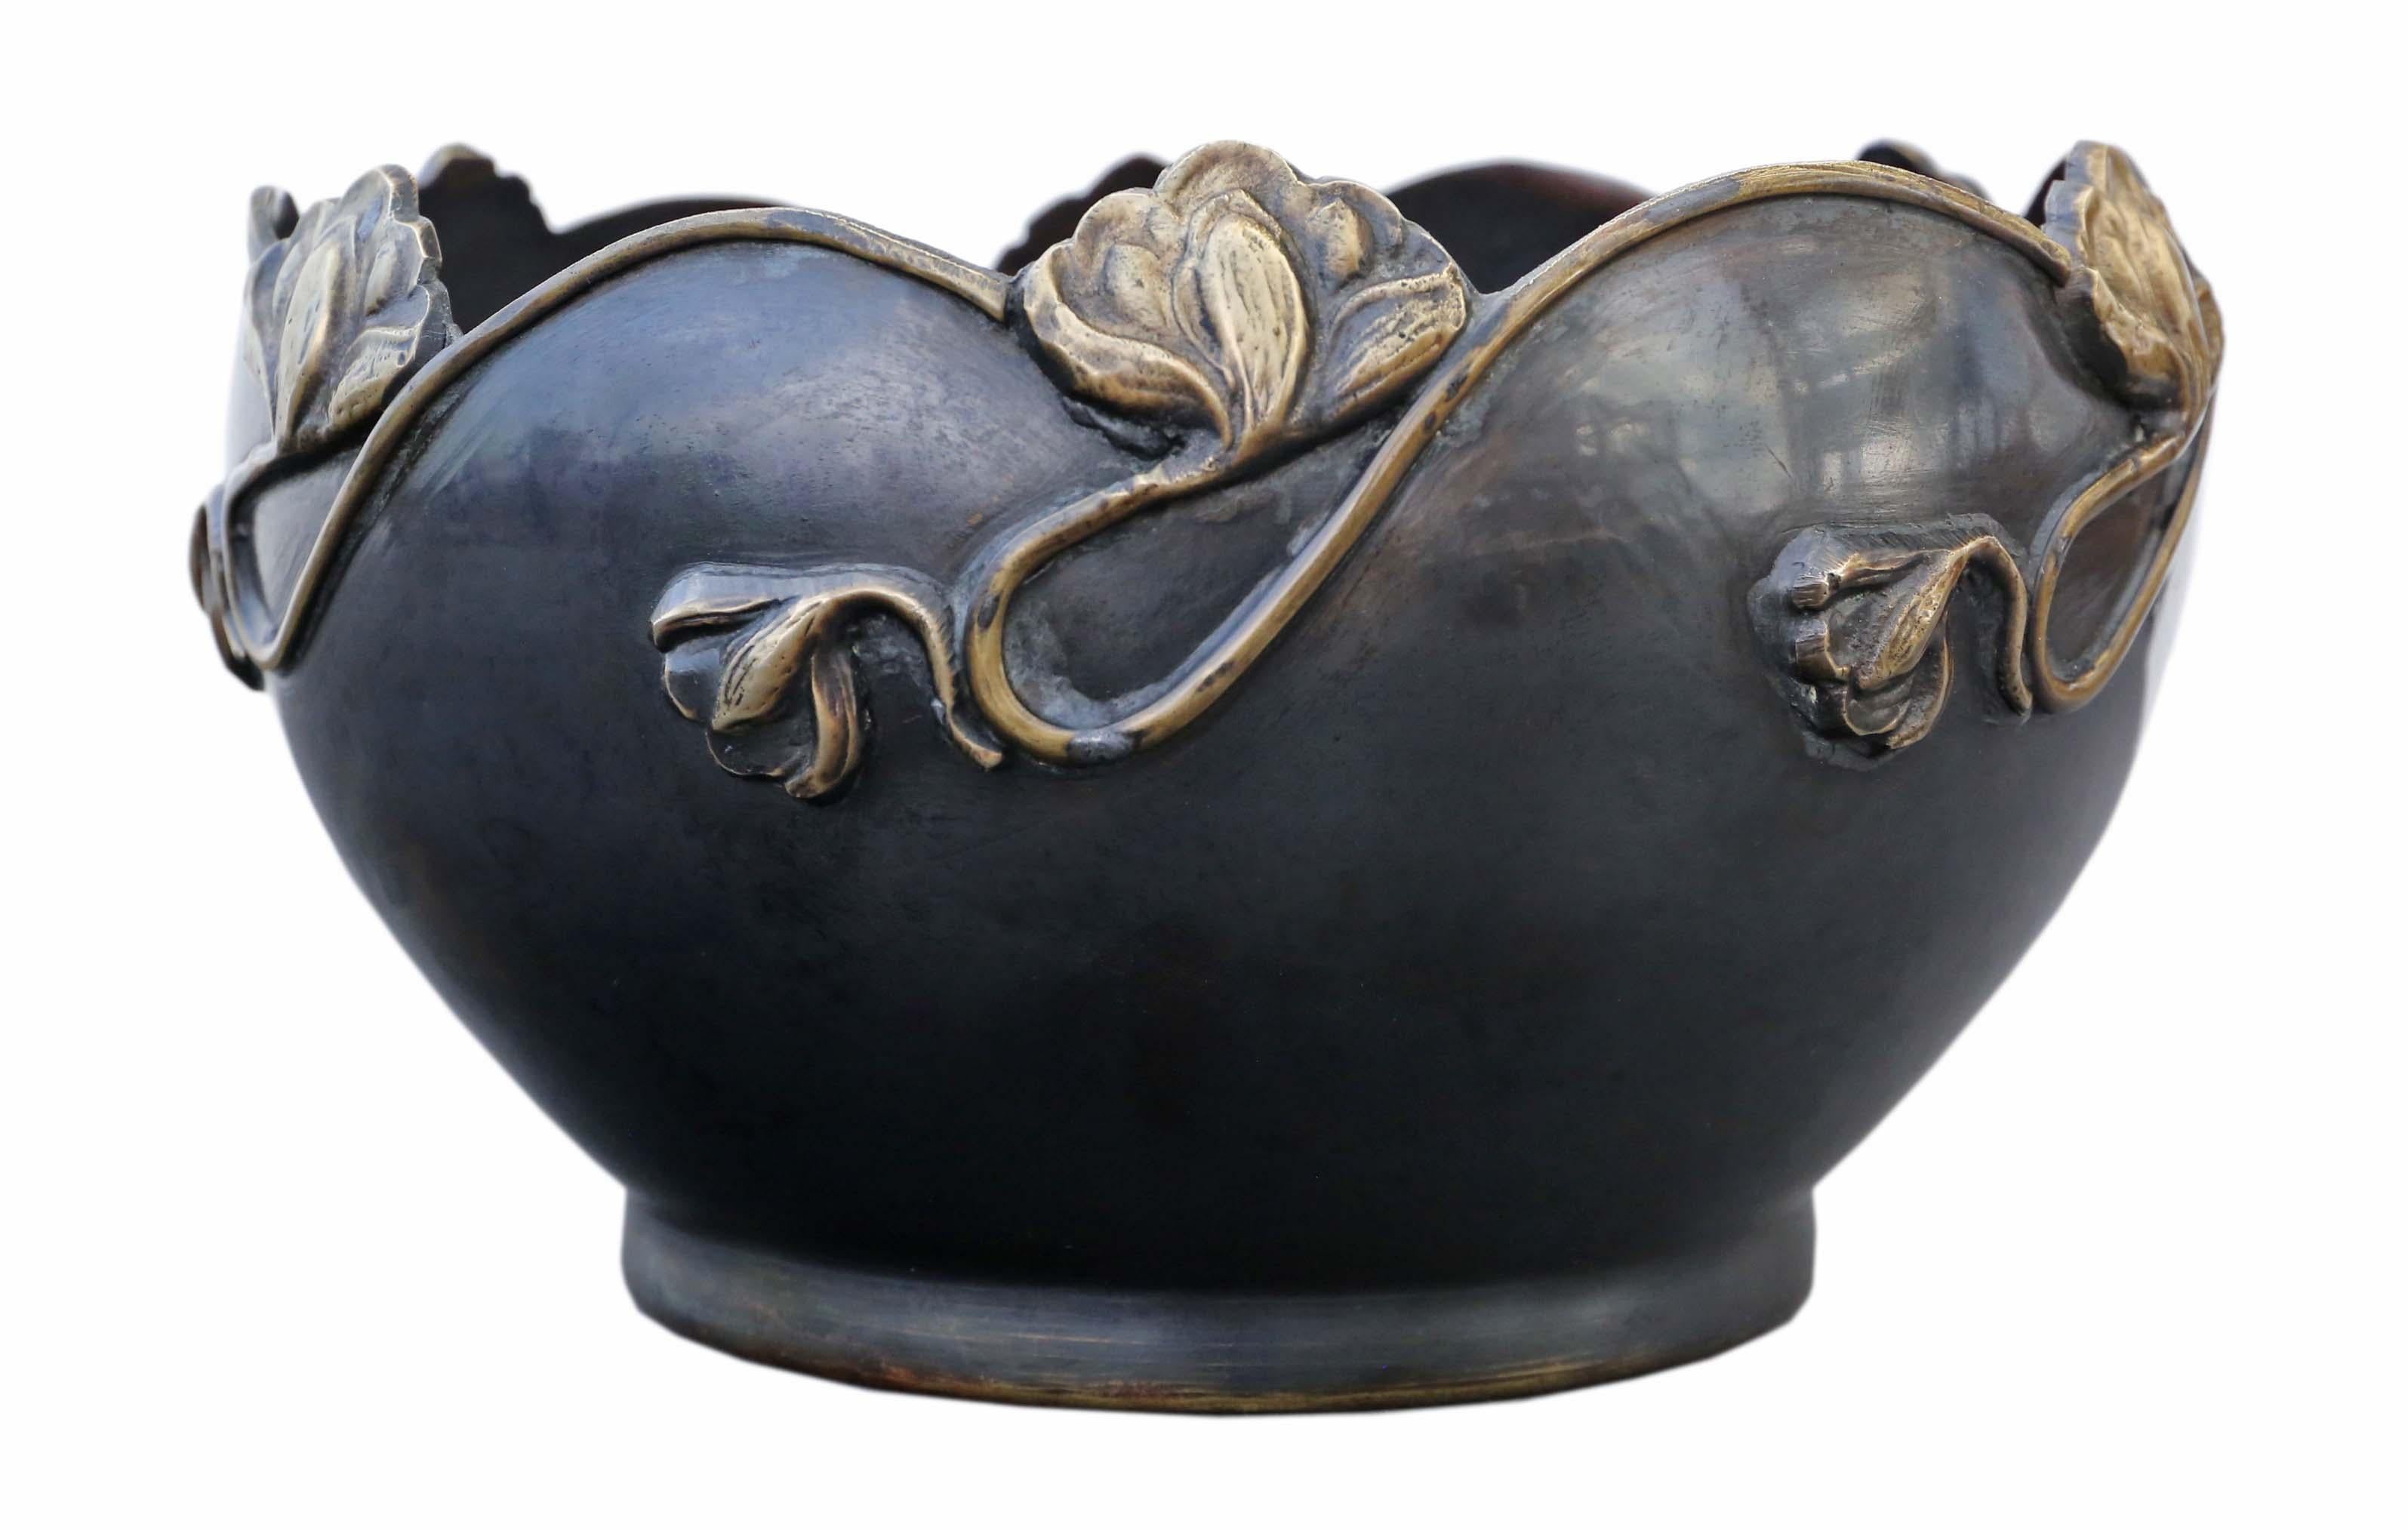 Antique grande qualité Art Nouveau Jardinière bowl censor planter Japanese Oriental mixed metal Meiji Period early 20th Century.

Il aurait l'air incroyable dans le bon endroit et ferait une pièce maîtresse fabuleuse. Superbe couleur et